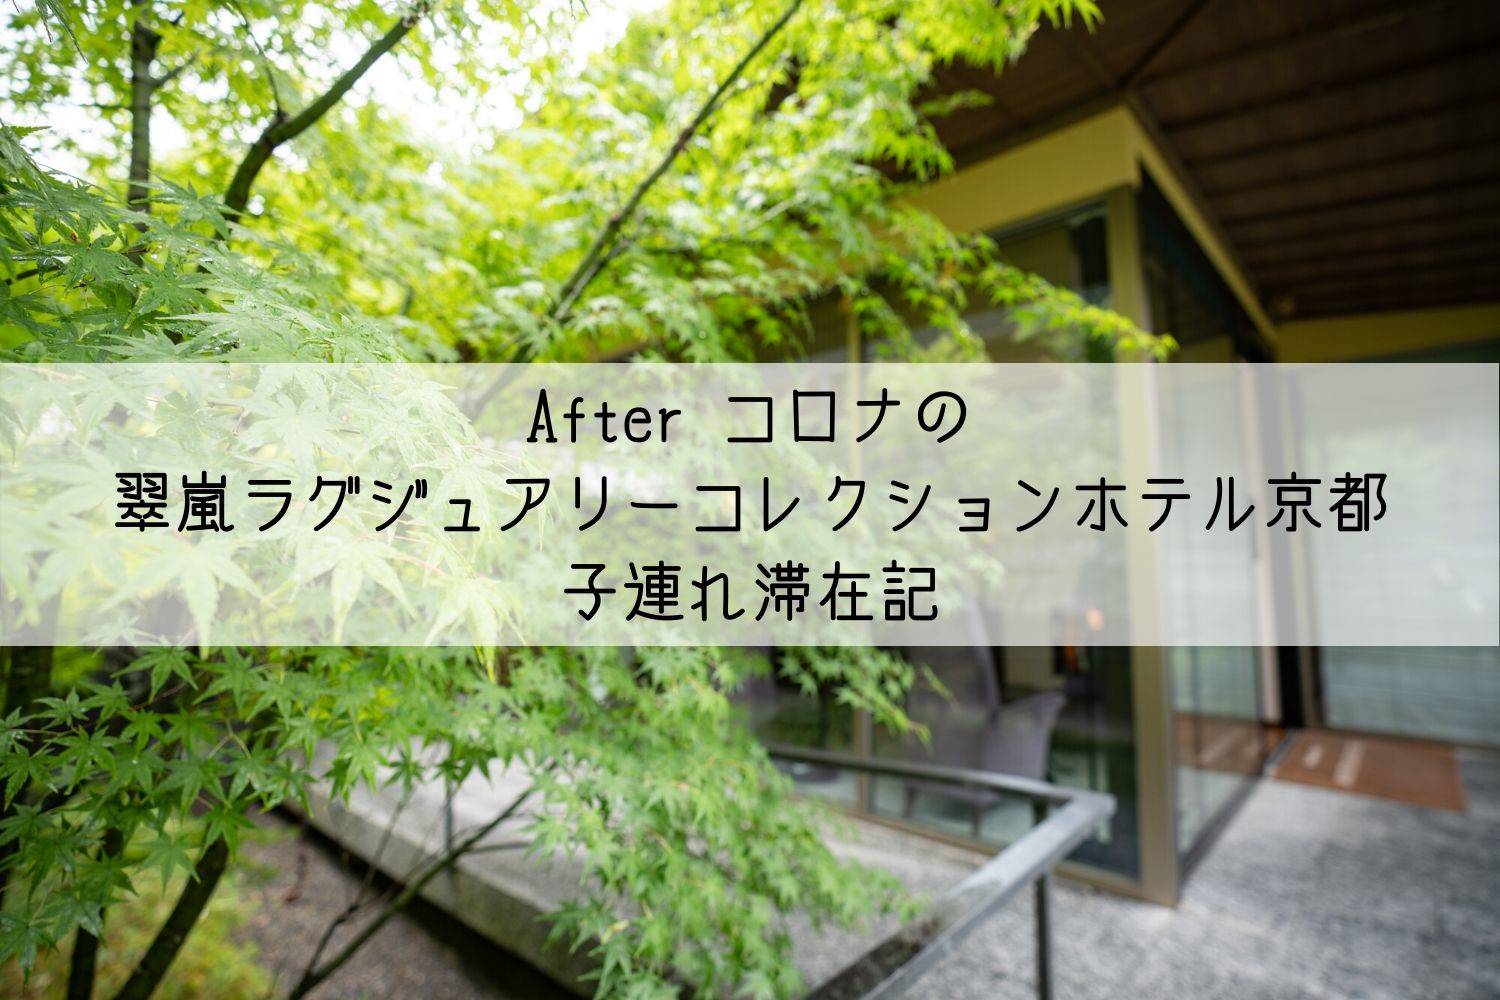 ラグジュアリー 翠 コレクション 京都 嵐 ホテル